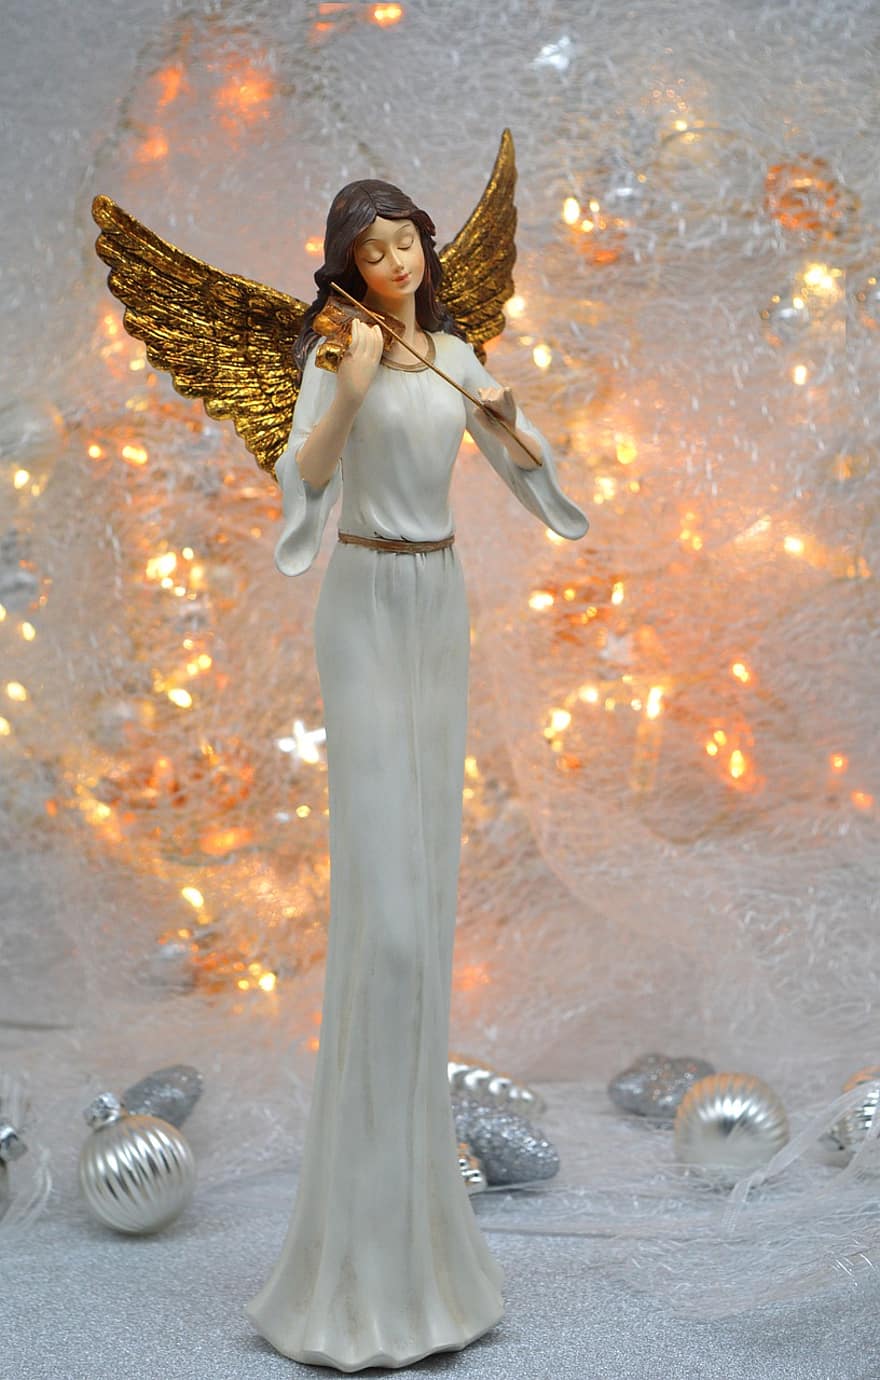 χριστουγεννιάτικος άγγελος, Χριστούγεννα, φώτα, Χριστουγεννιάτικη διακόσμηση, βιολί, χρυσά φτερά, άγγελος, Χριστουγεννιάτικο μοτίβο